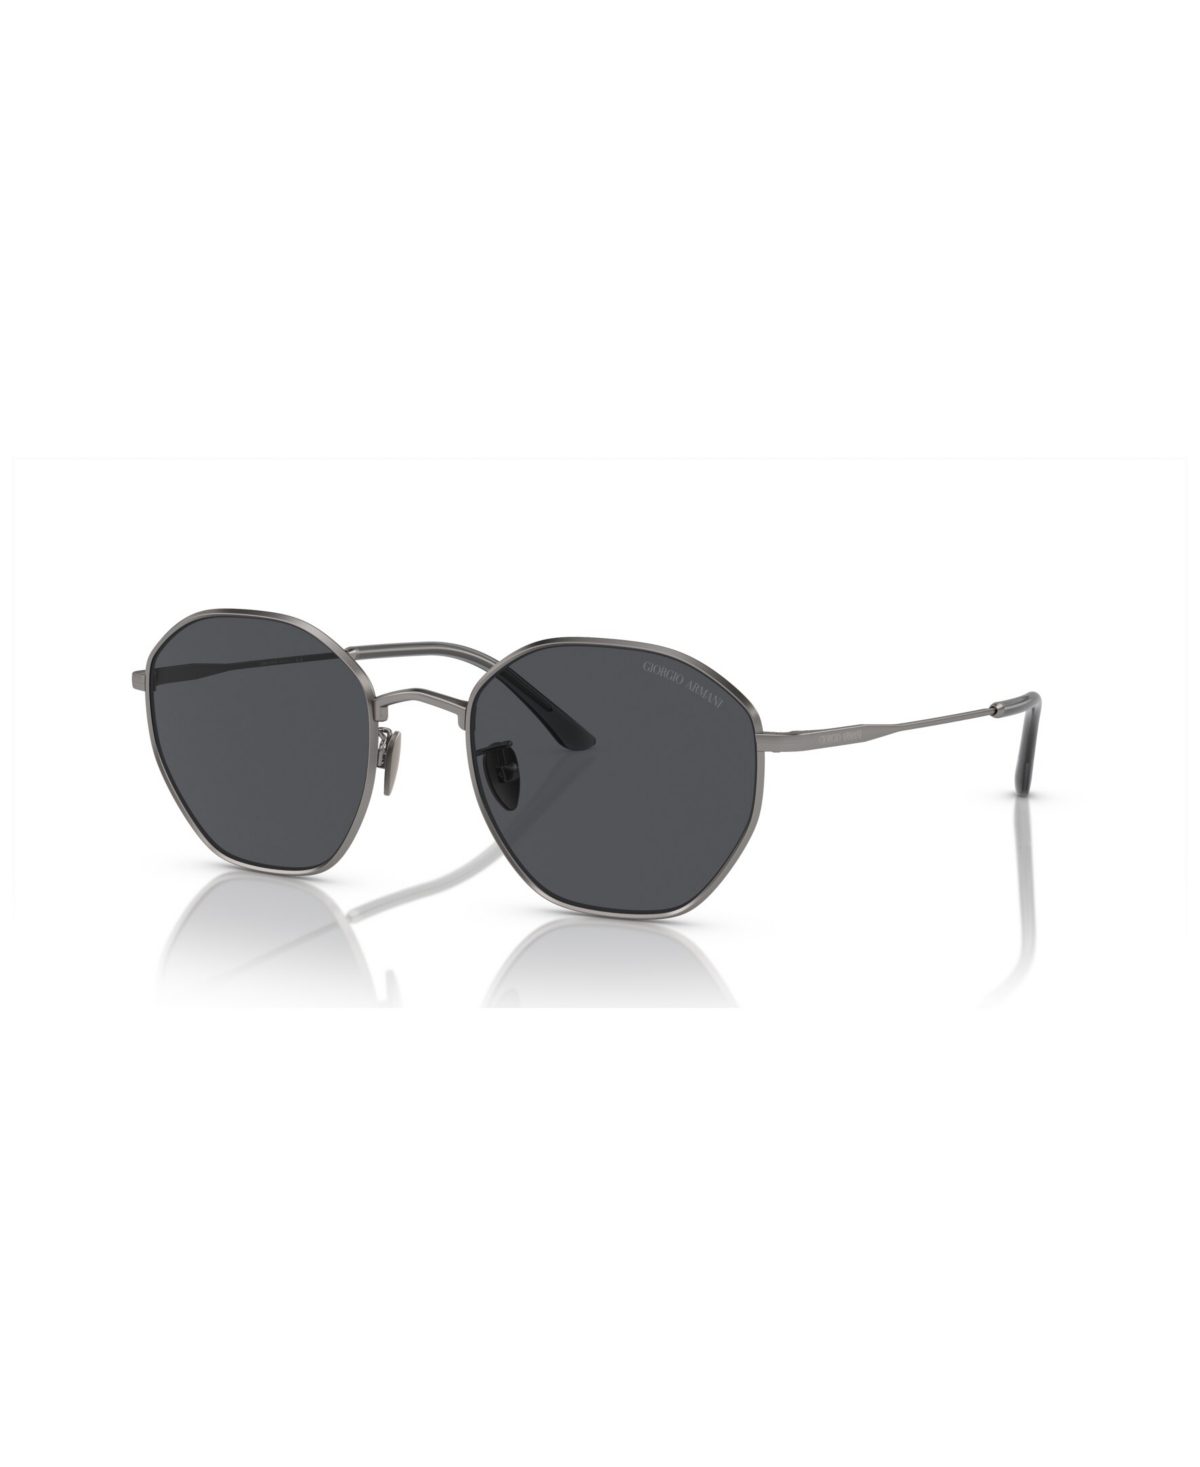 Giorgio Armani Men's Sunglasses Ar6150 In Matte Black